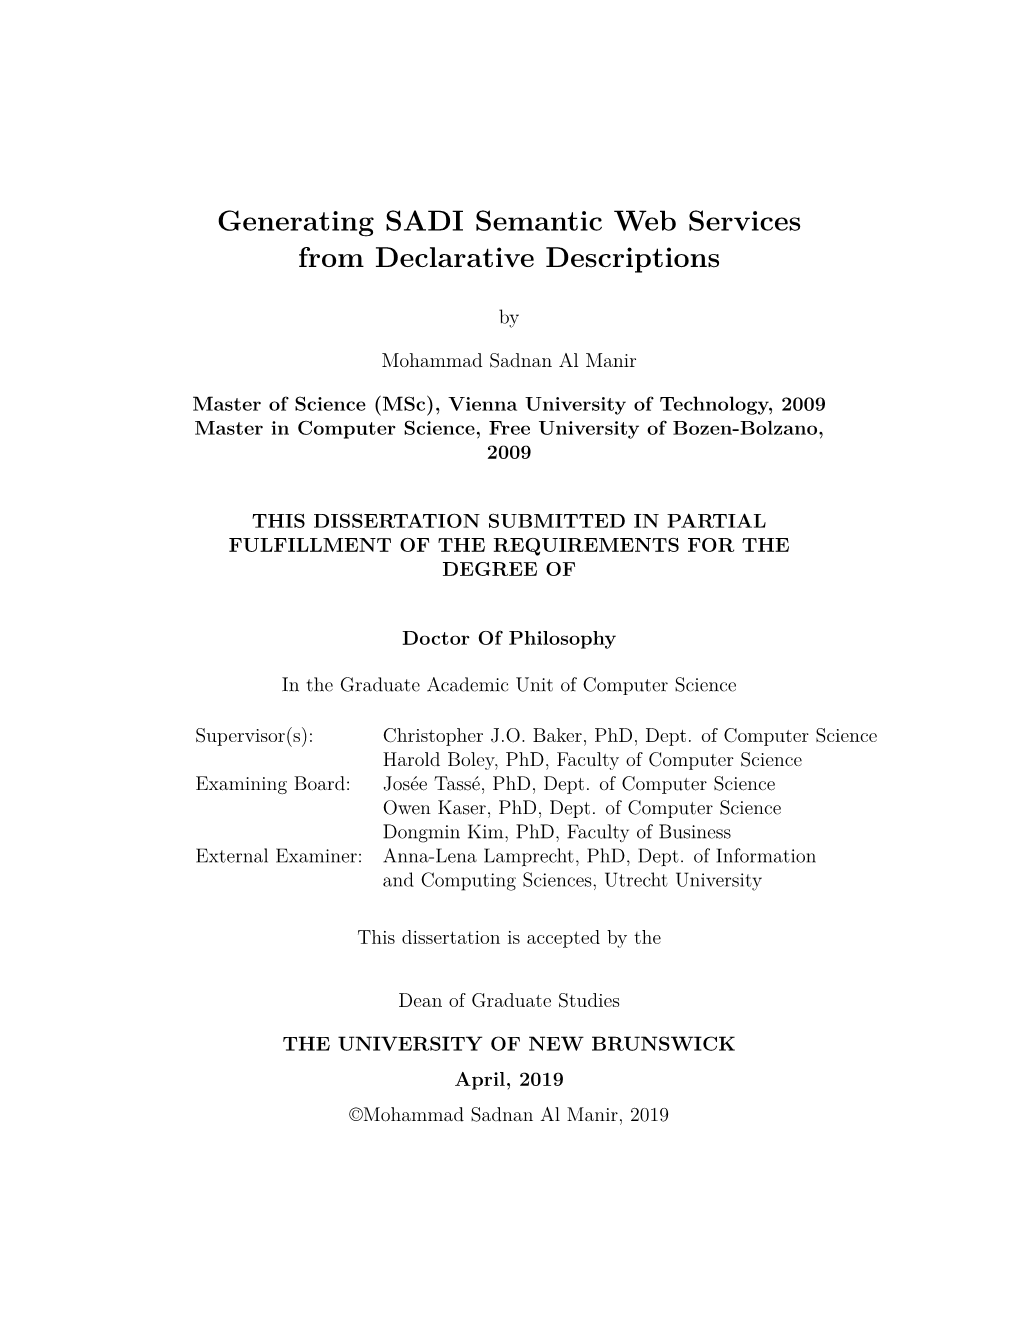 Generating SADI Semantic Web Services from Declarative Descriptions